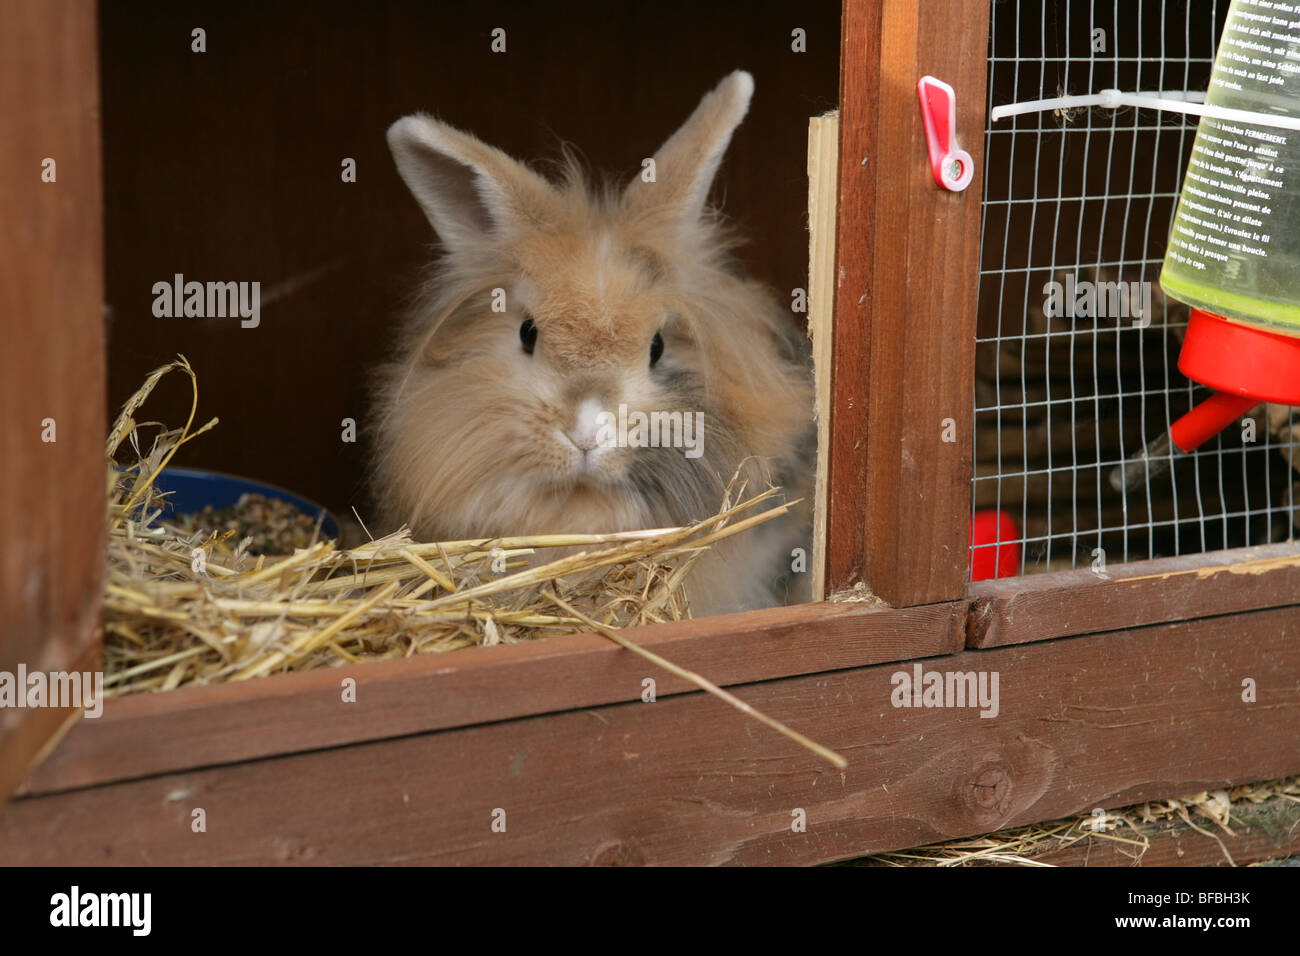 Kaninchenstall Stockfotos und -bilder Kaufen - Alamy